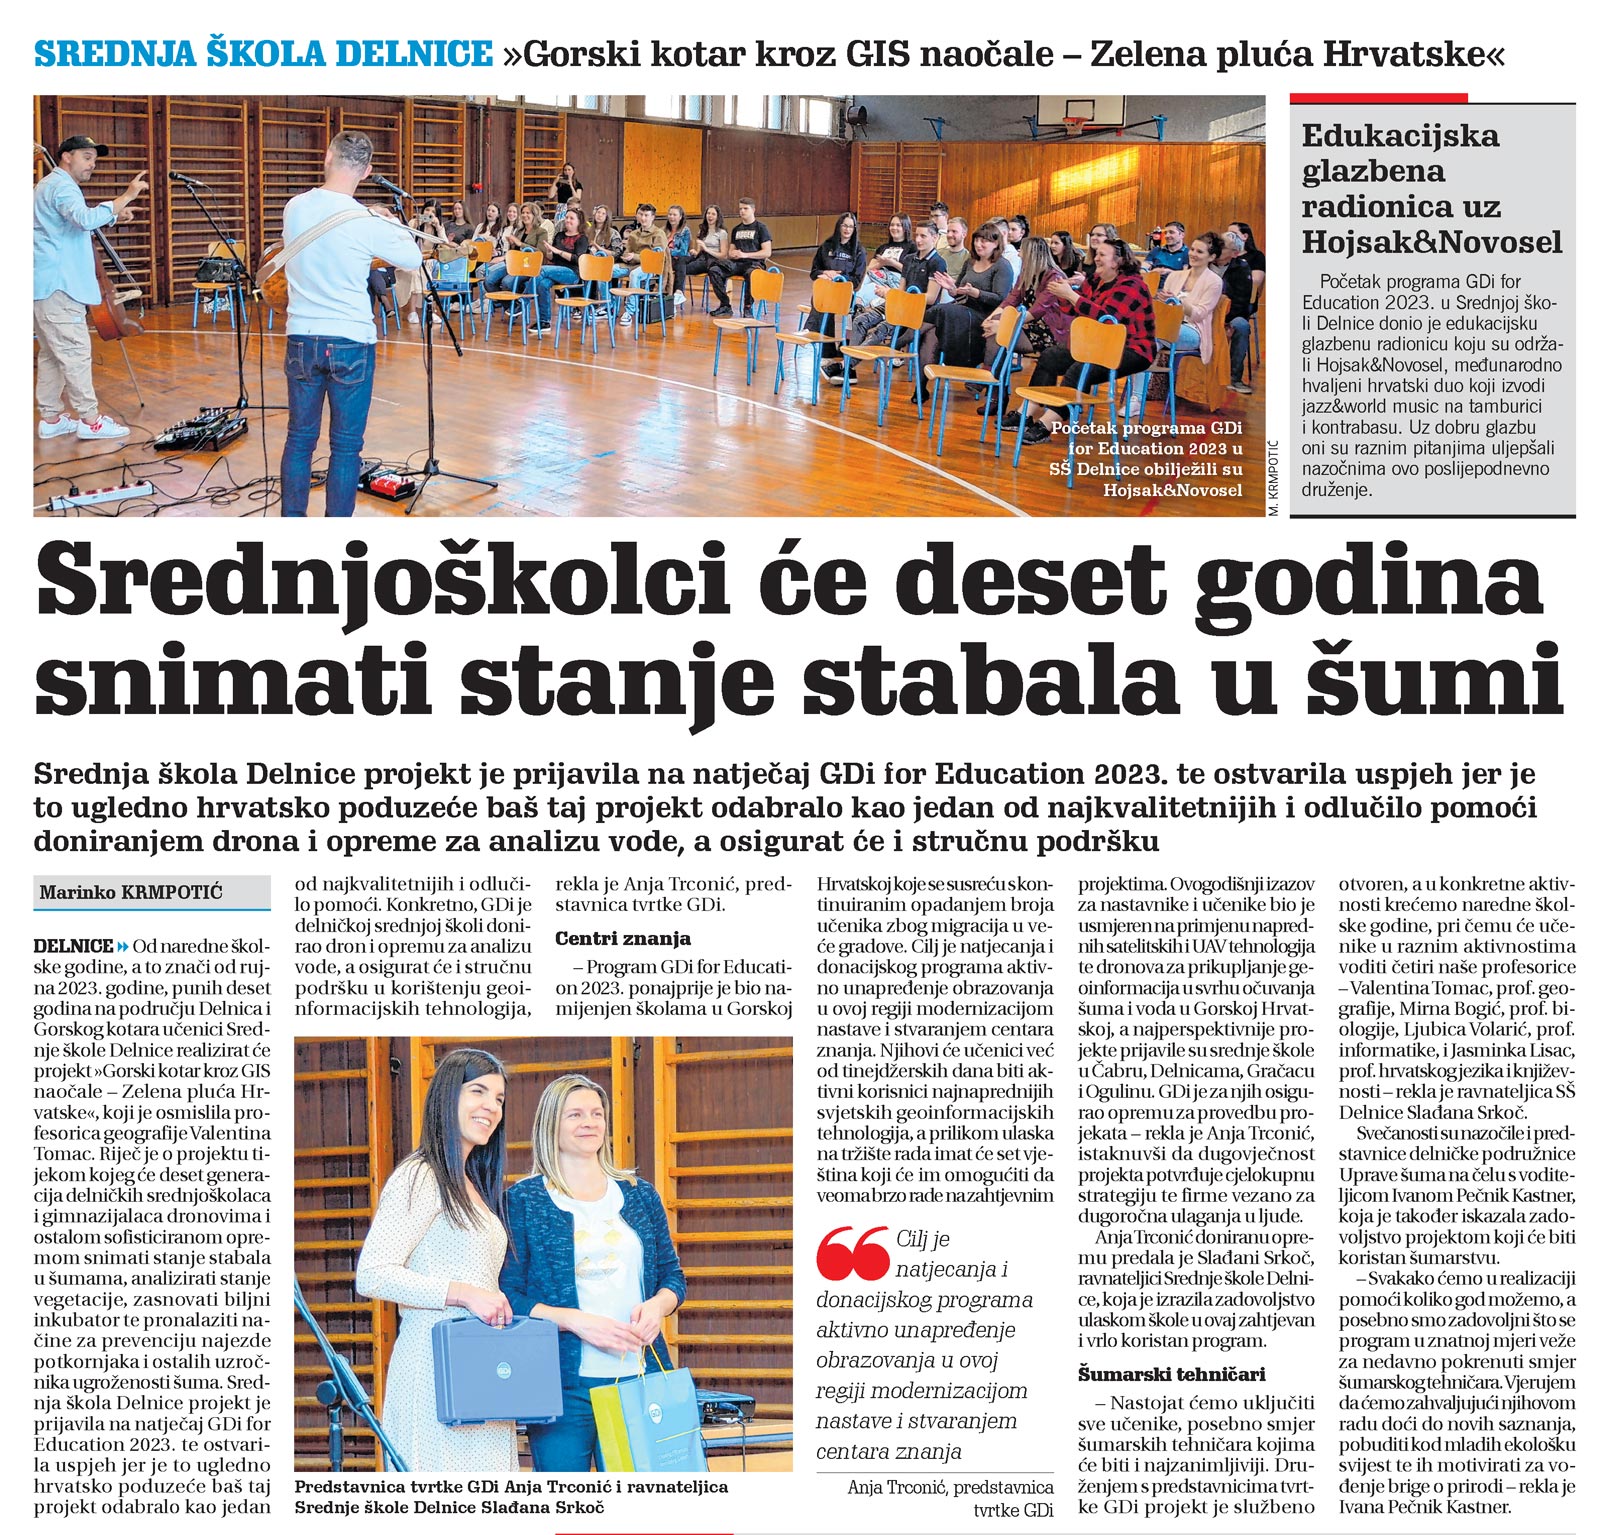 članak, novi list, srednja škola delnice projekti, stanje stabala u šumi, gis naočale, zelena pluća hrvatske